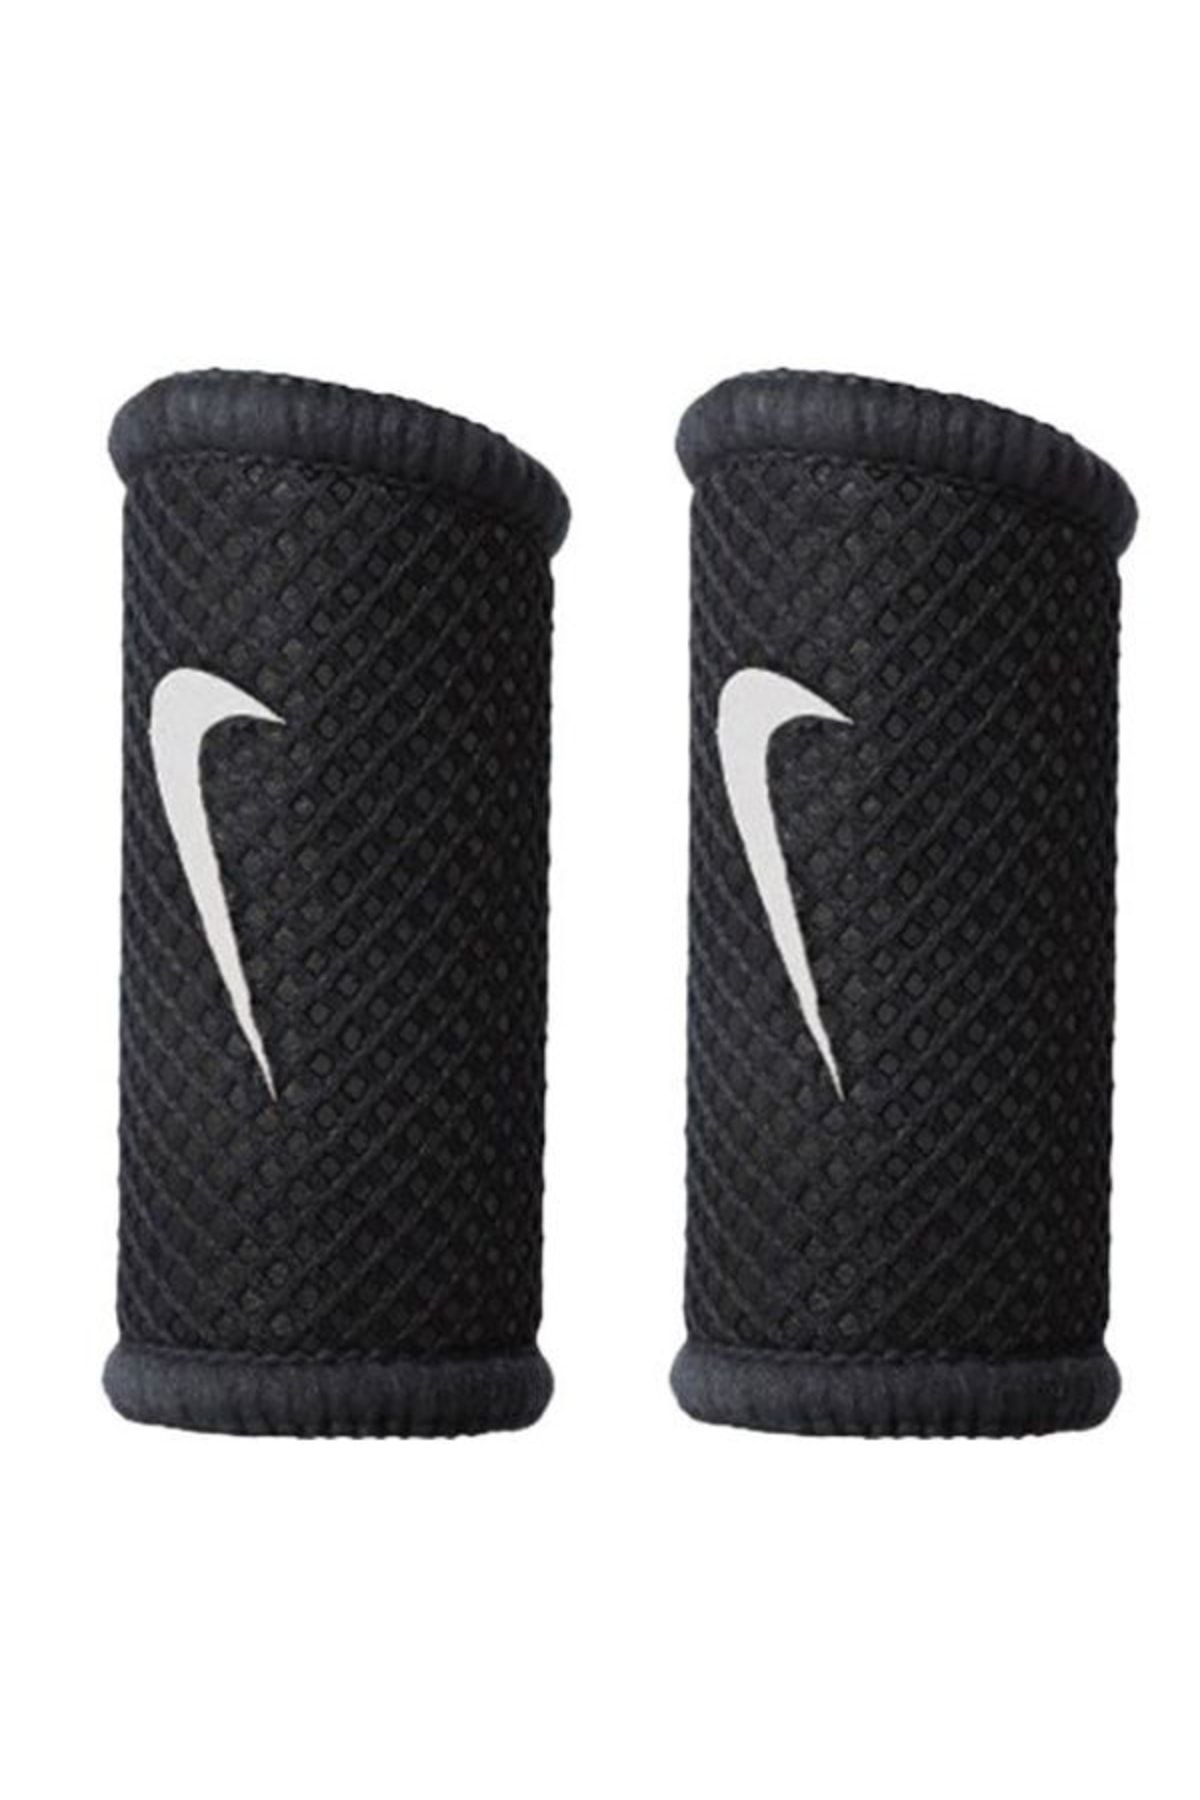 Nike Finger Sleeves Basketbol Parmak Koruyucu